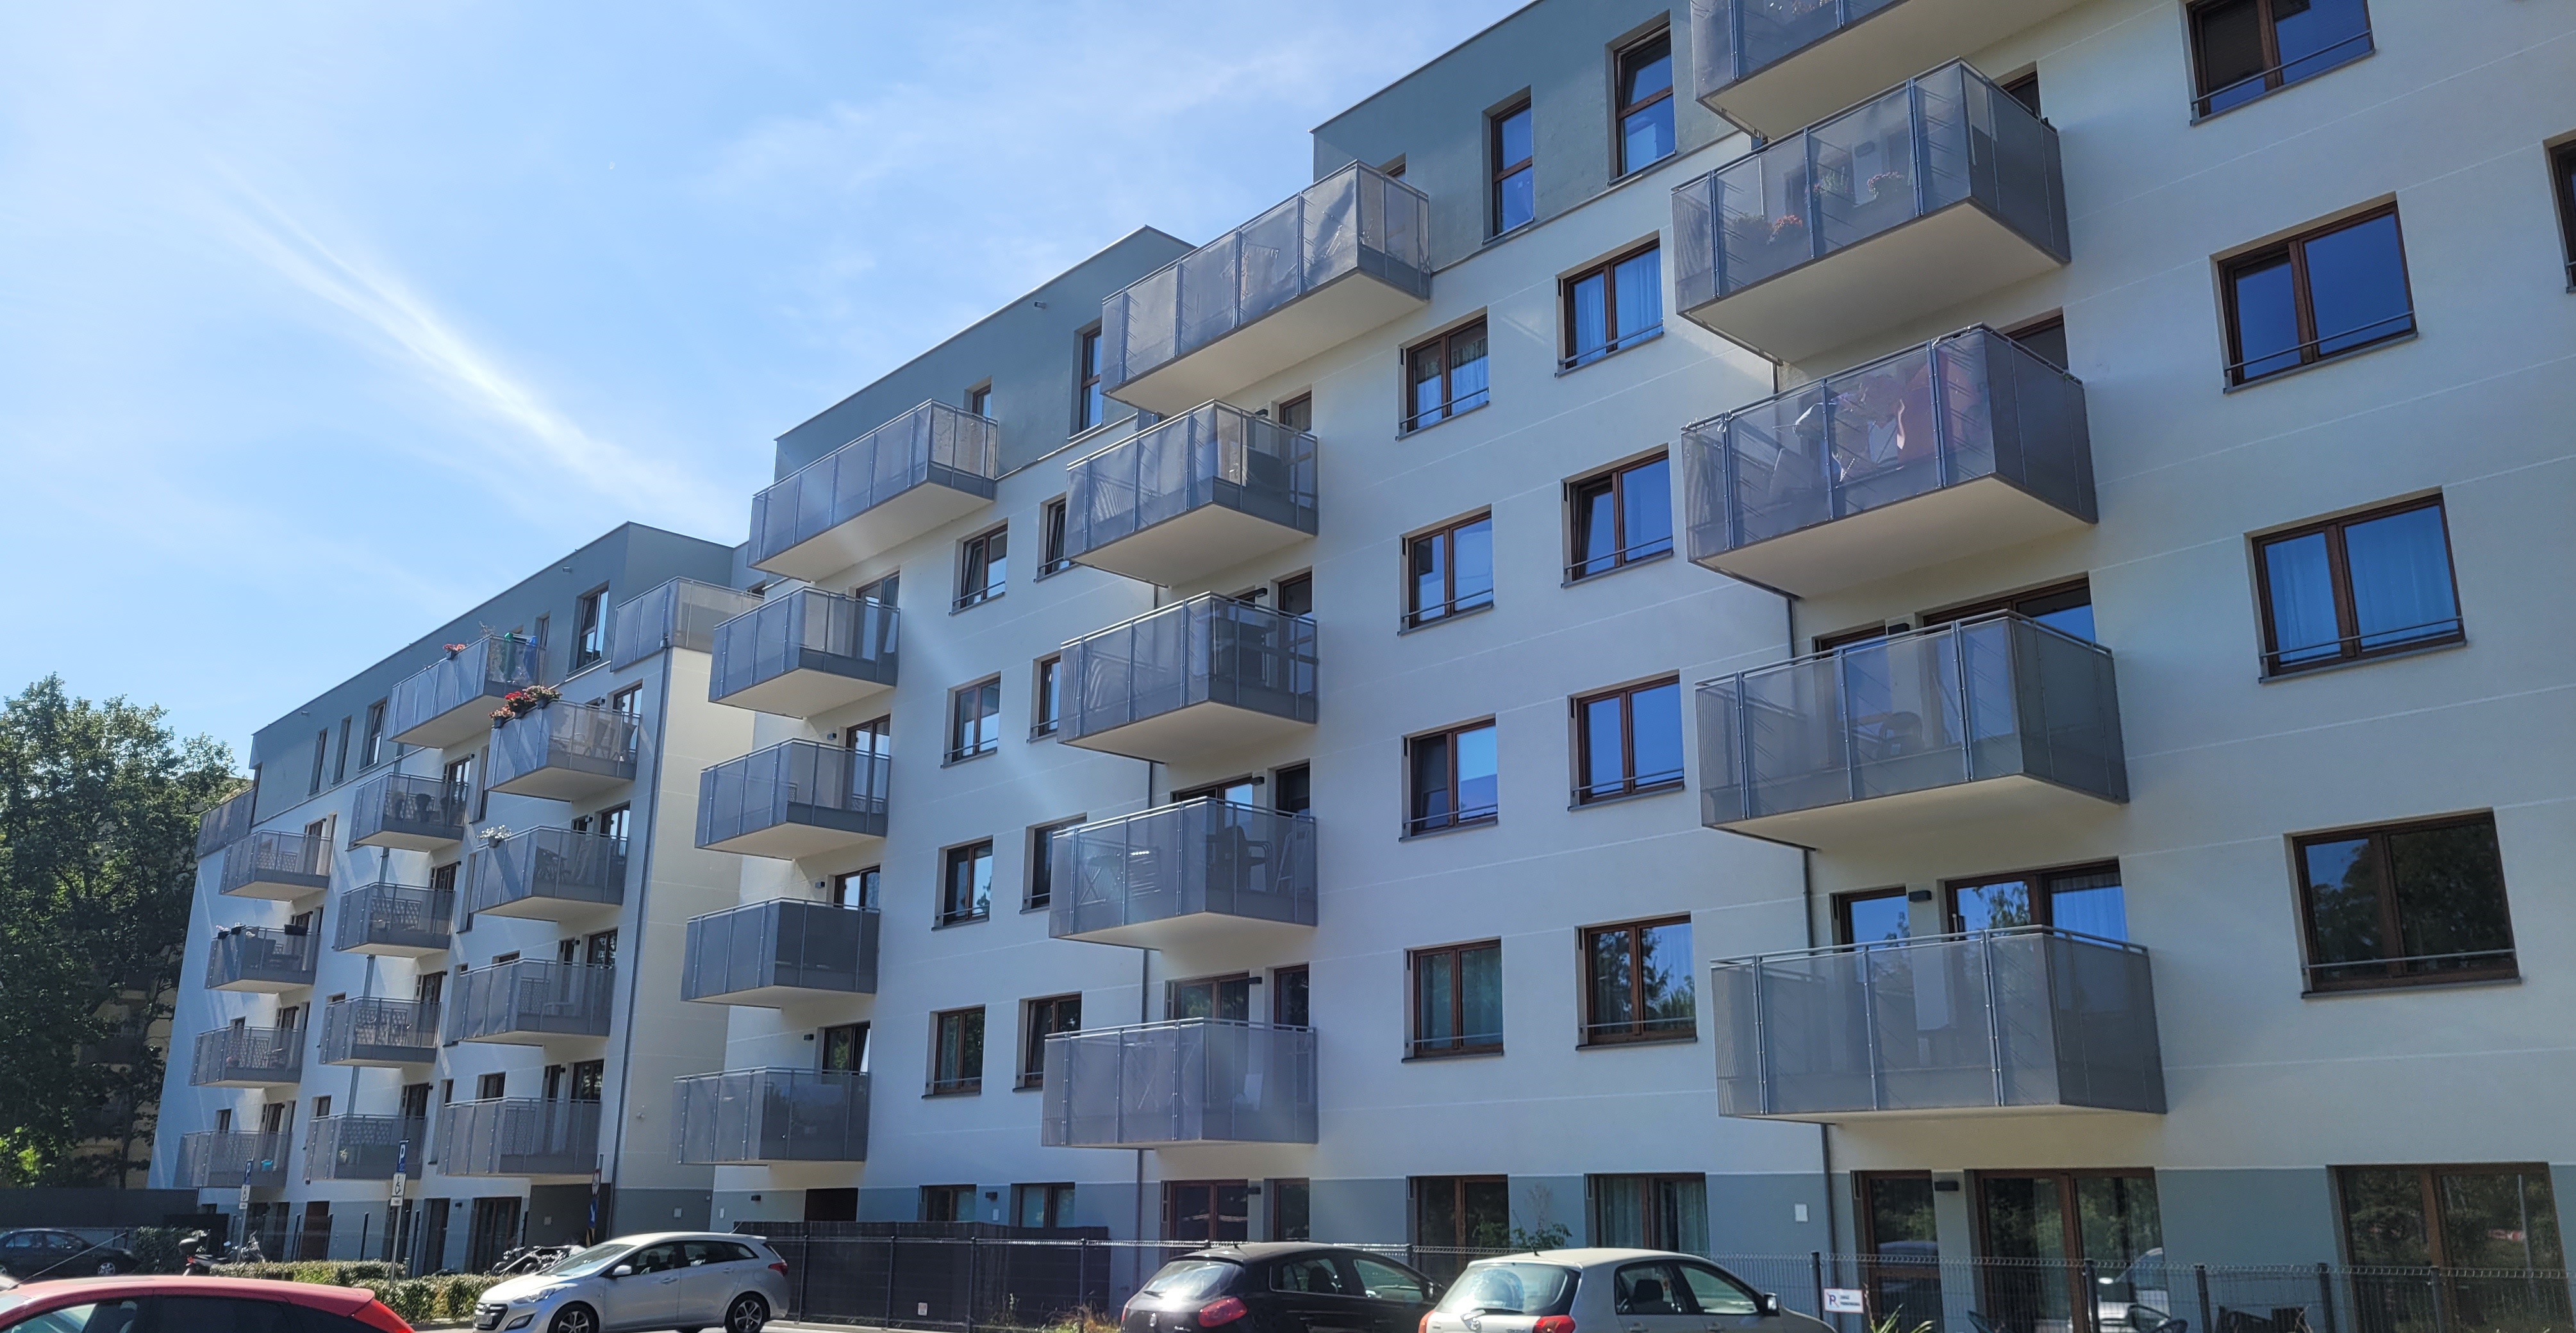 Osiedle mieszkaniowe "FORET" w Warszawie - Building construction